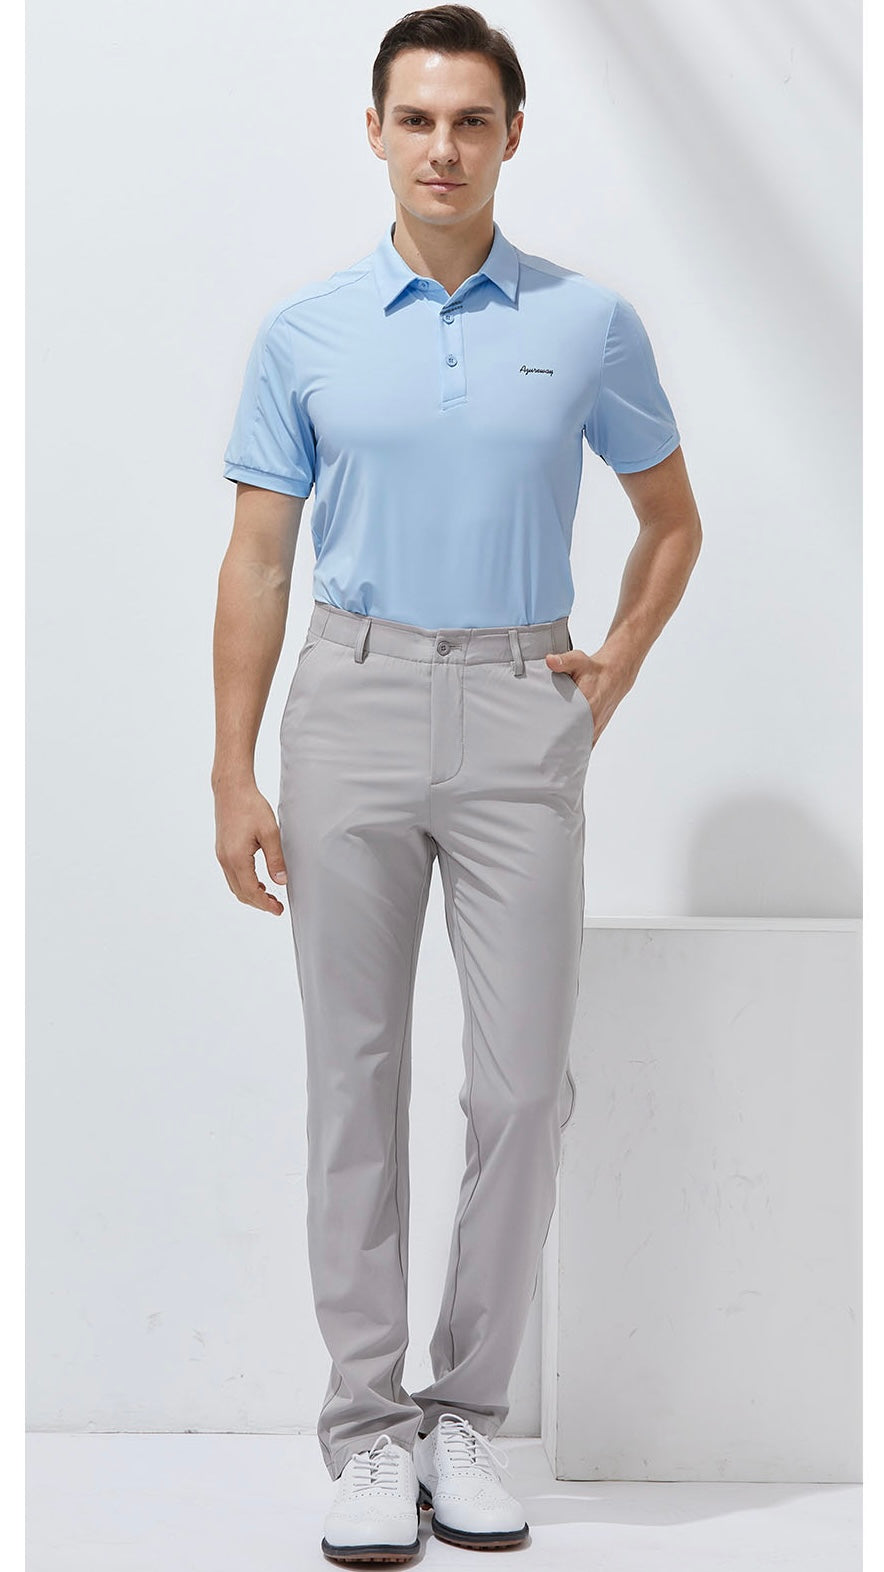 Men’s Golf Shirt | Azureway AW-T2236